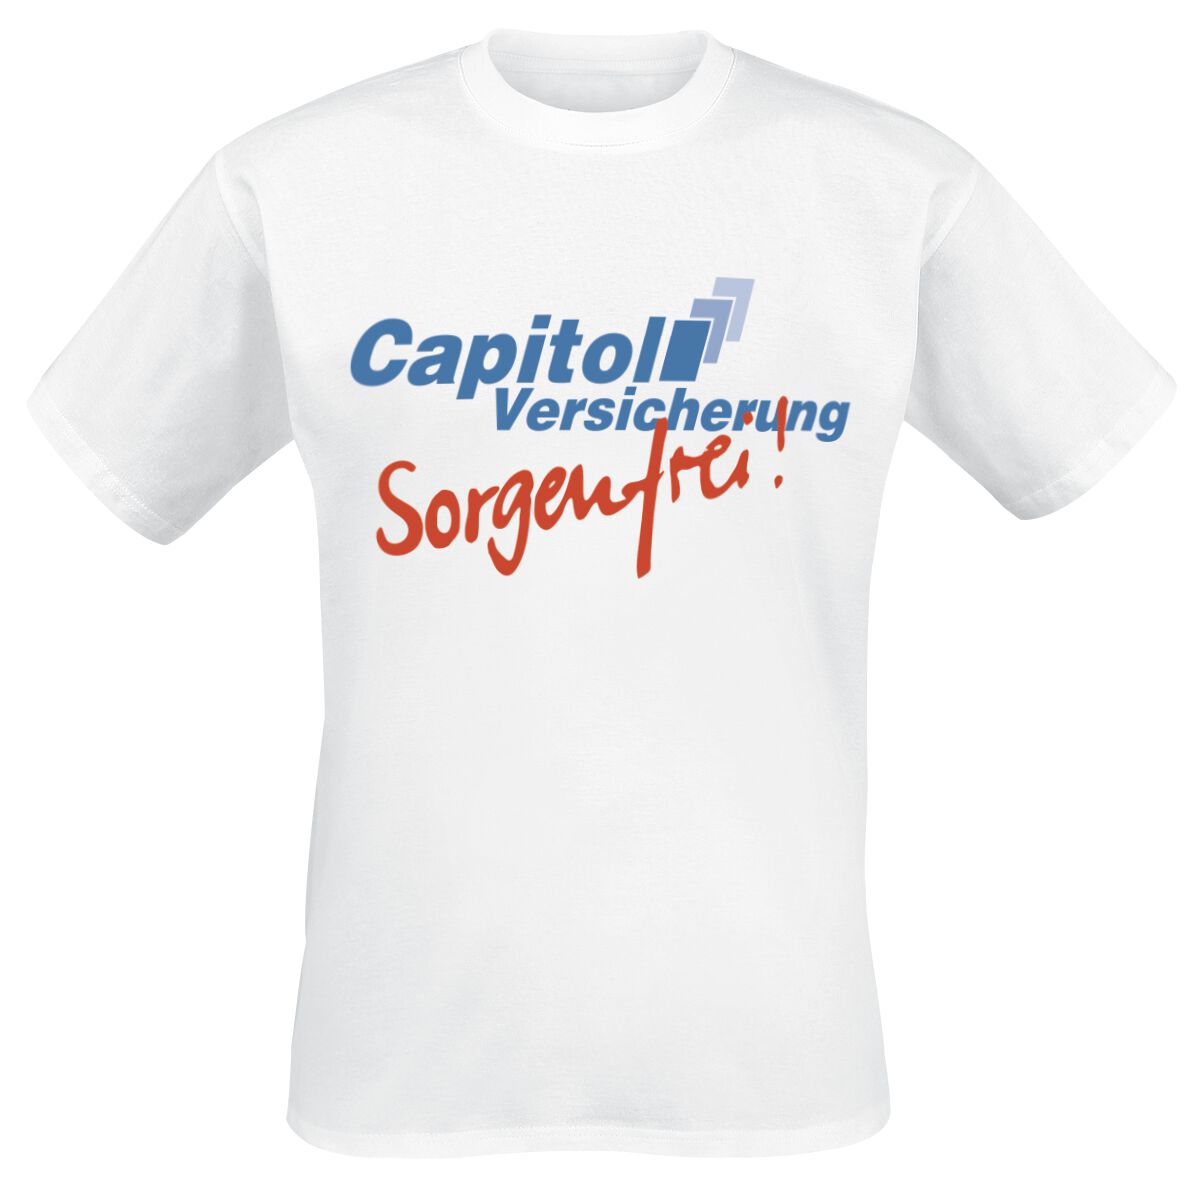 Stromberg T-Shirt - Capitol Versicherung - Sorgenfrei! - S bis 4XL - für Männer - Größe 4XL - weiß